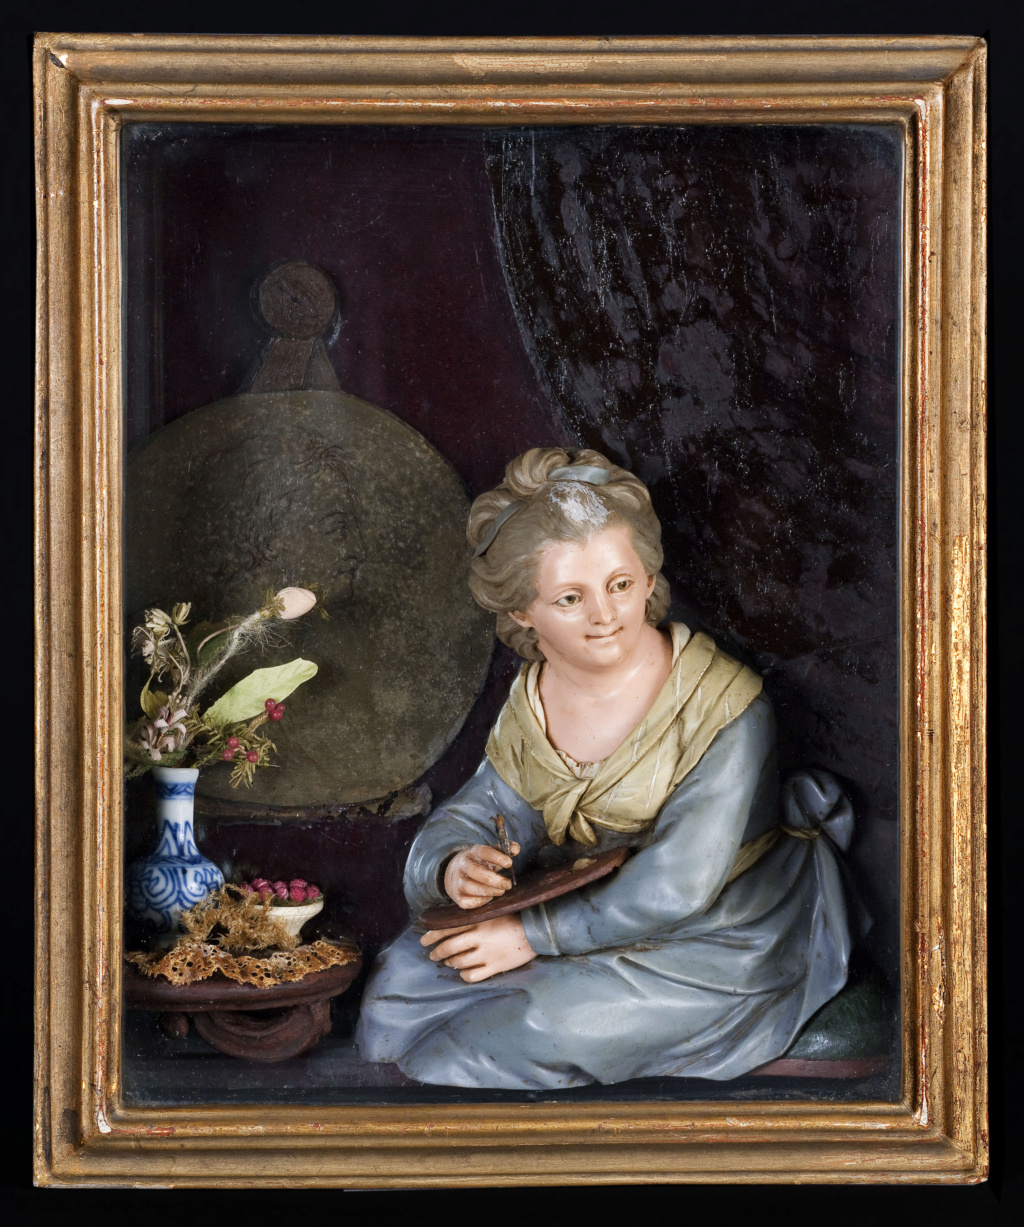 Les portraits et sculptures en cire au XVIIIe siècle (Céroplastie) Image_64